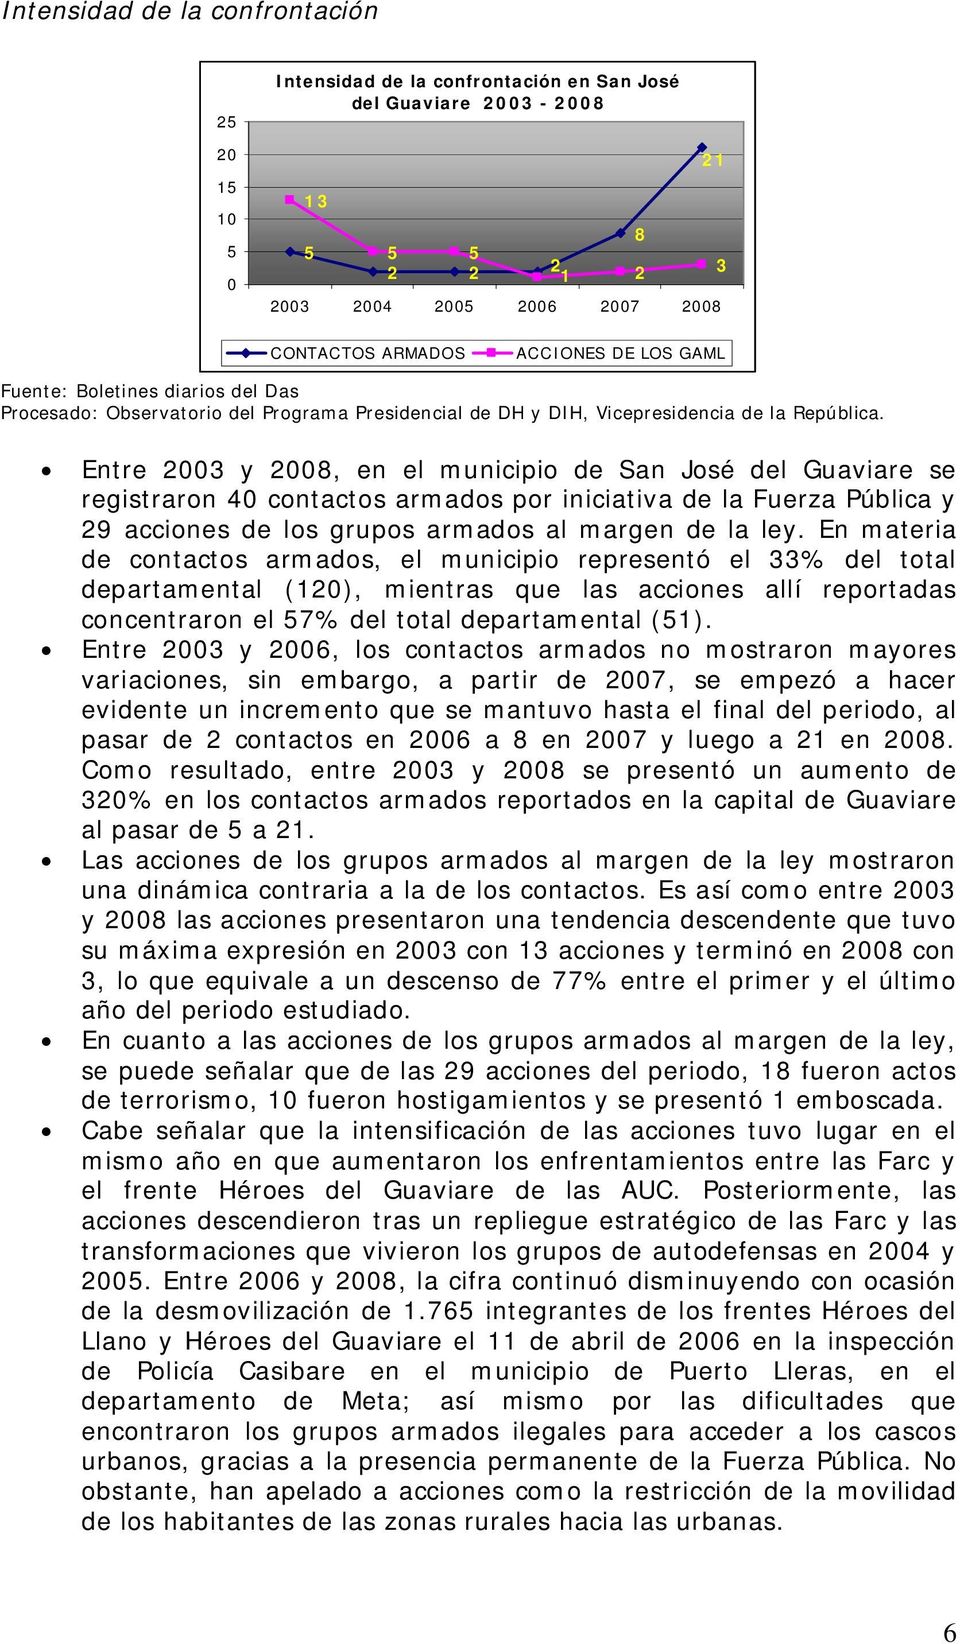 Entre 2003 y 2008, en el municipio de San José del Guaviare se registraron 40 contactos armados por iniciativa de la Fuerza Pública y 29 acciones de los grupos armados al margen de la ley.